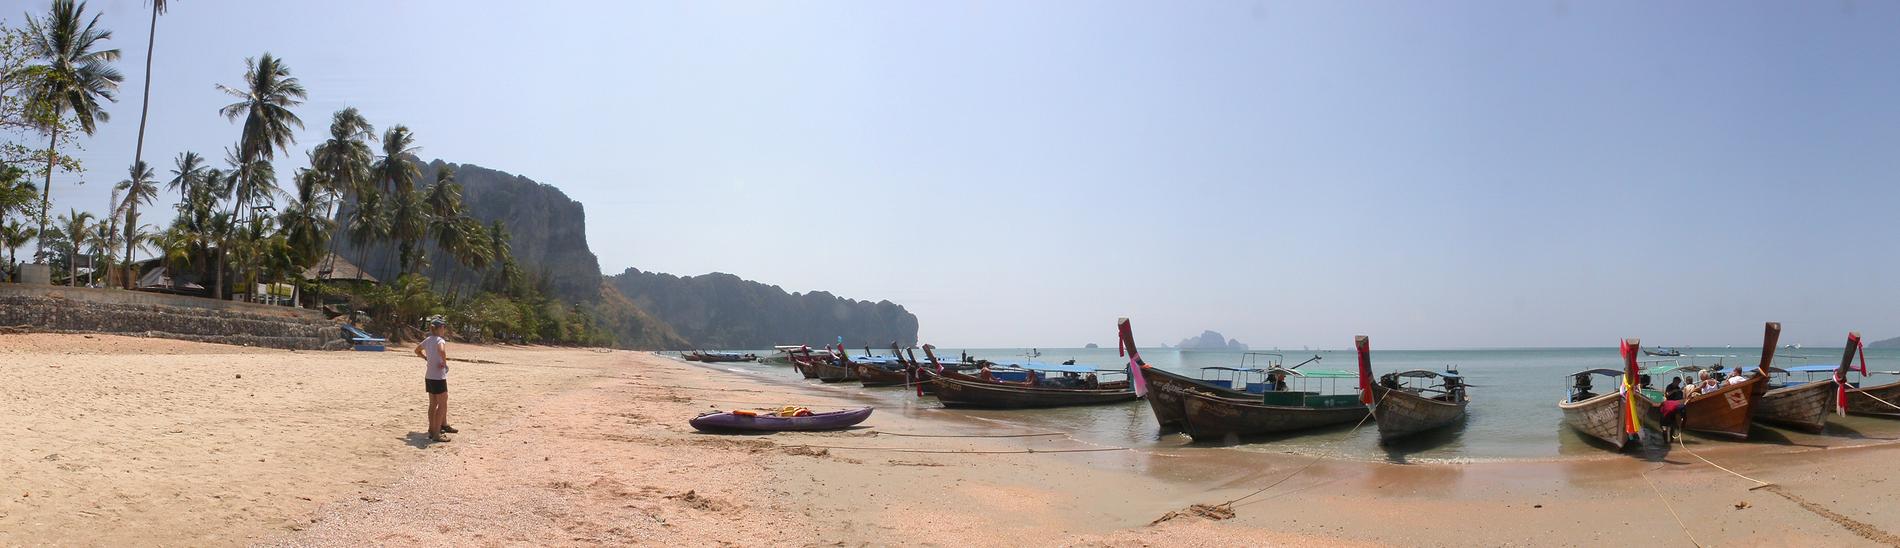 Ao Nang Beach, Krabi.